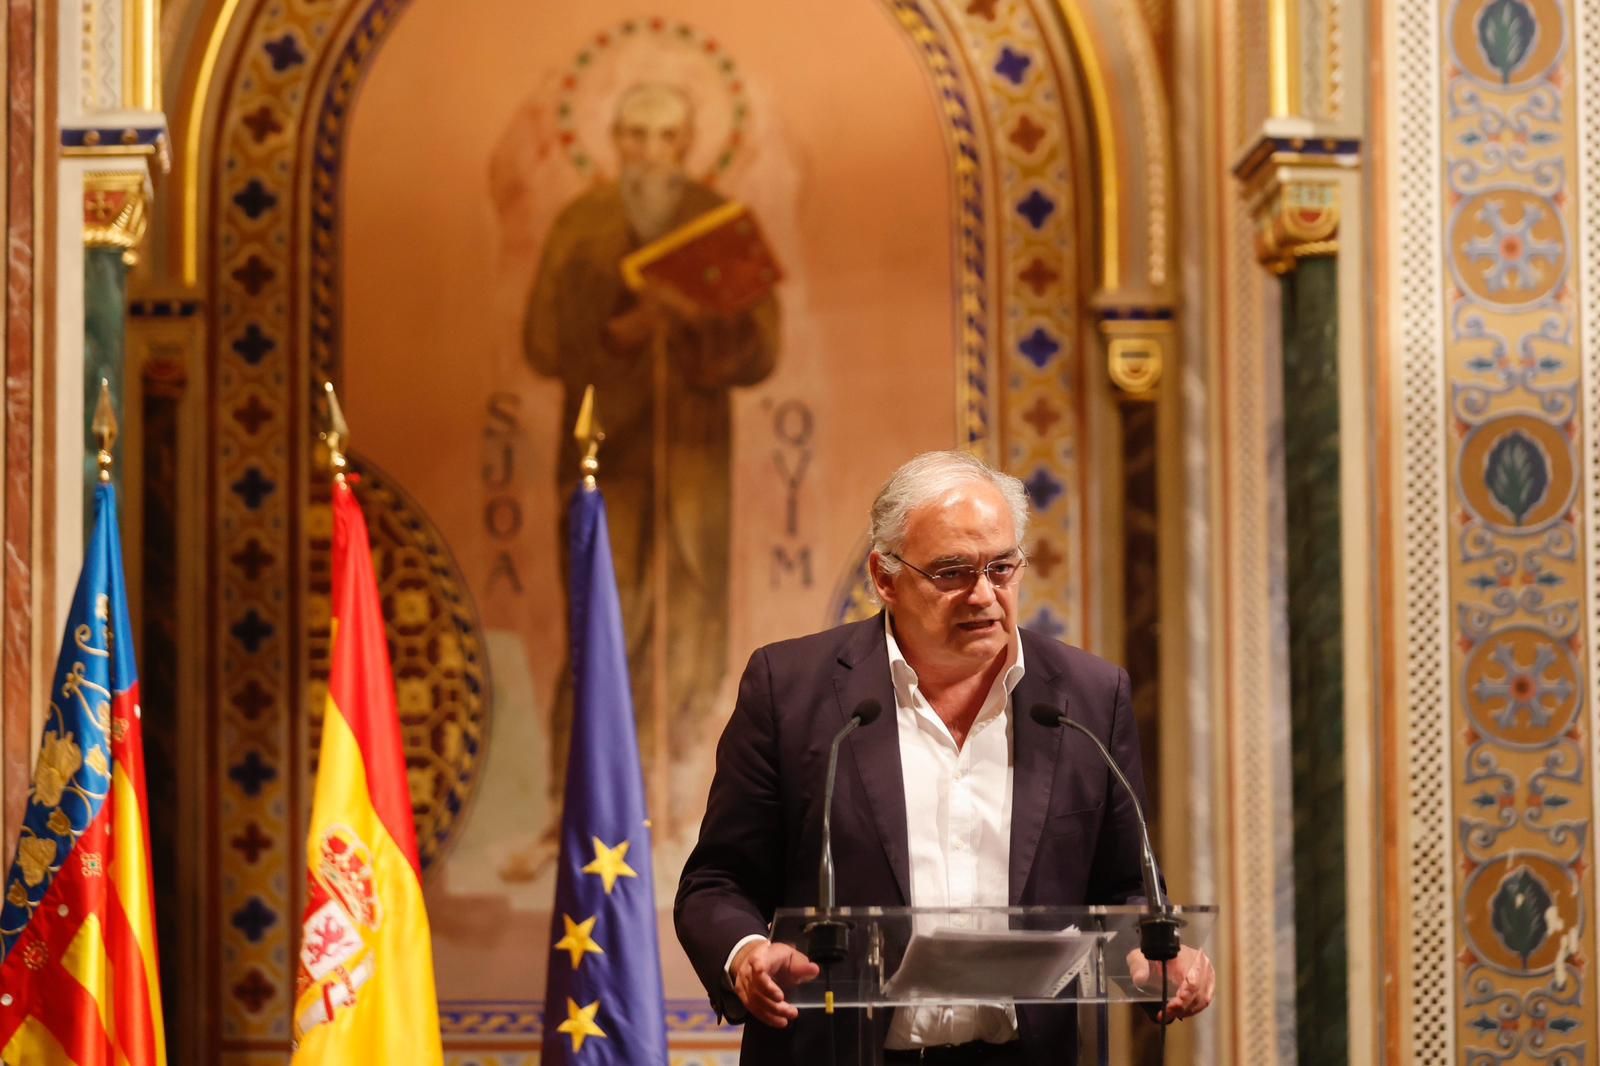 Presentación del nuevo libro de José Manuel García-Margallo